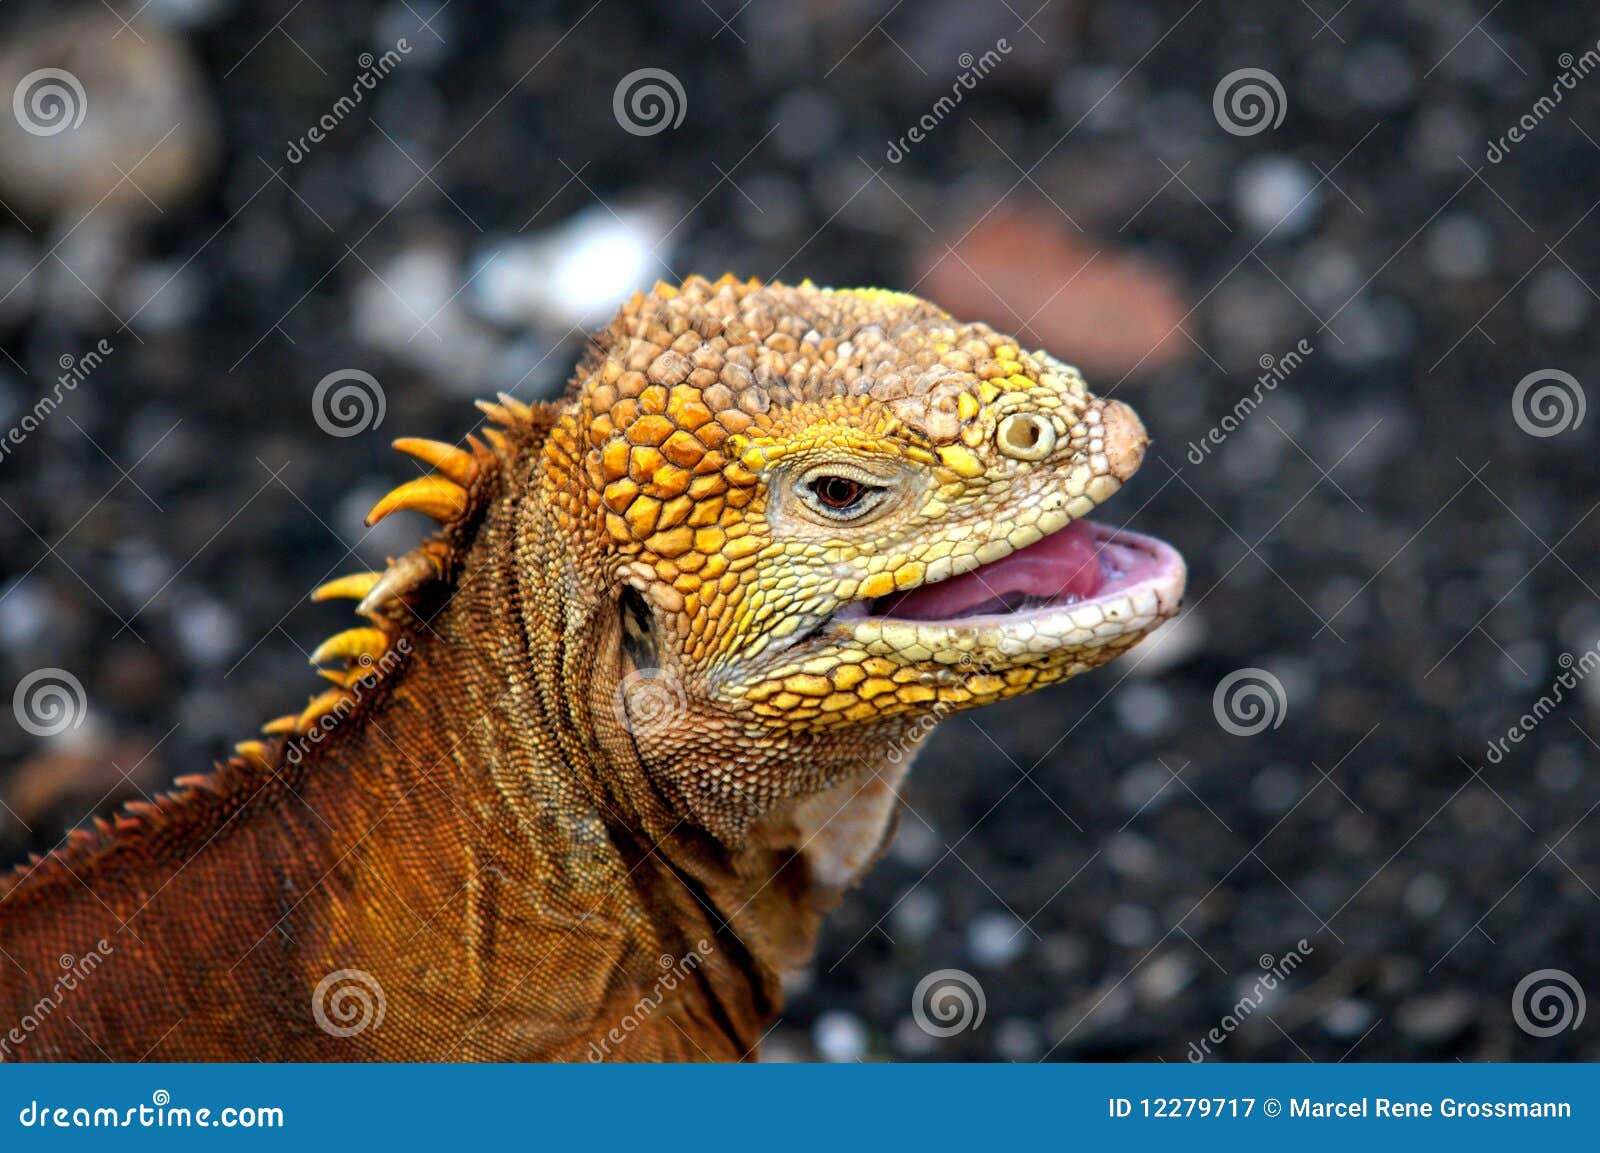 galapagos iguana